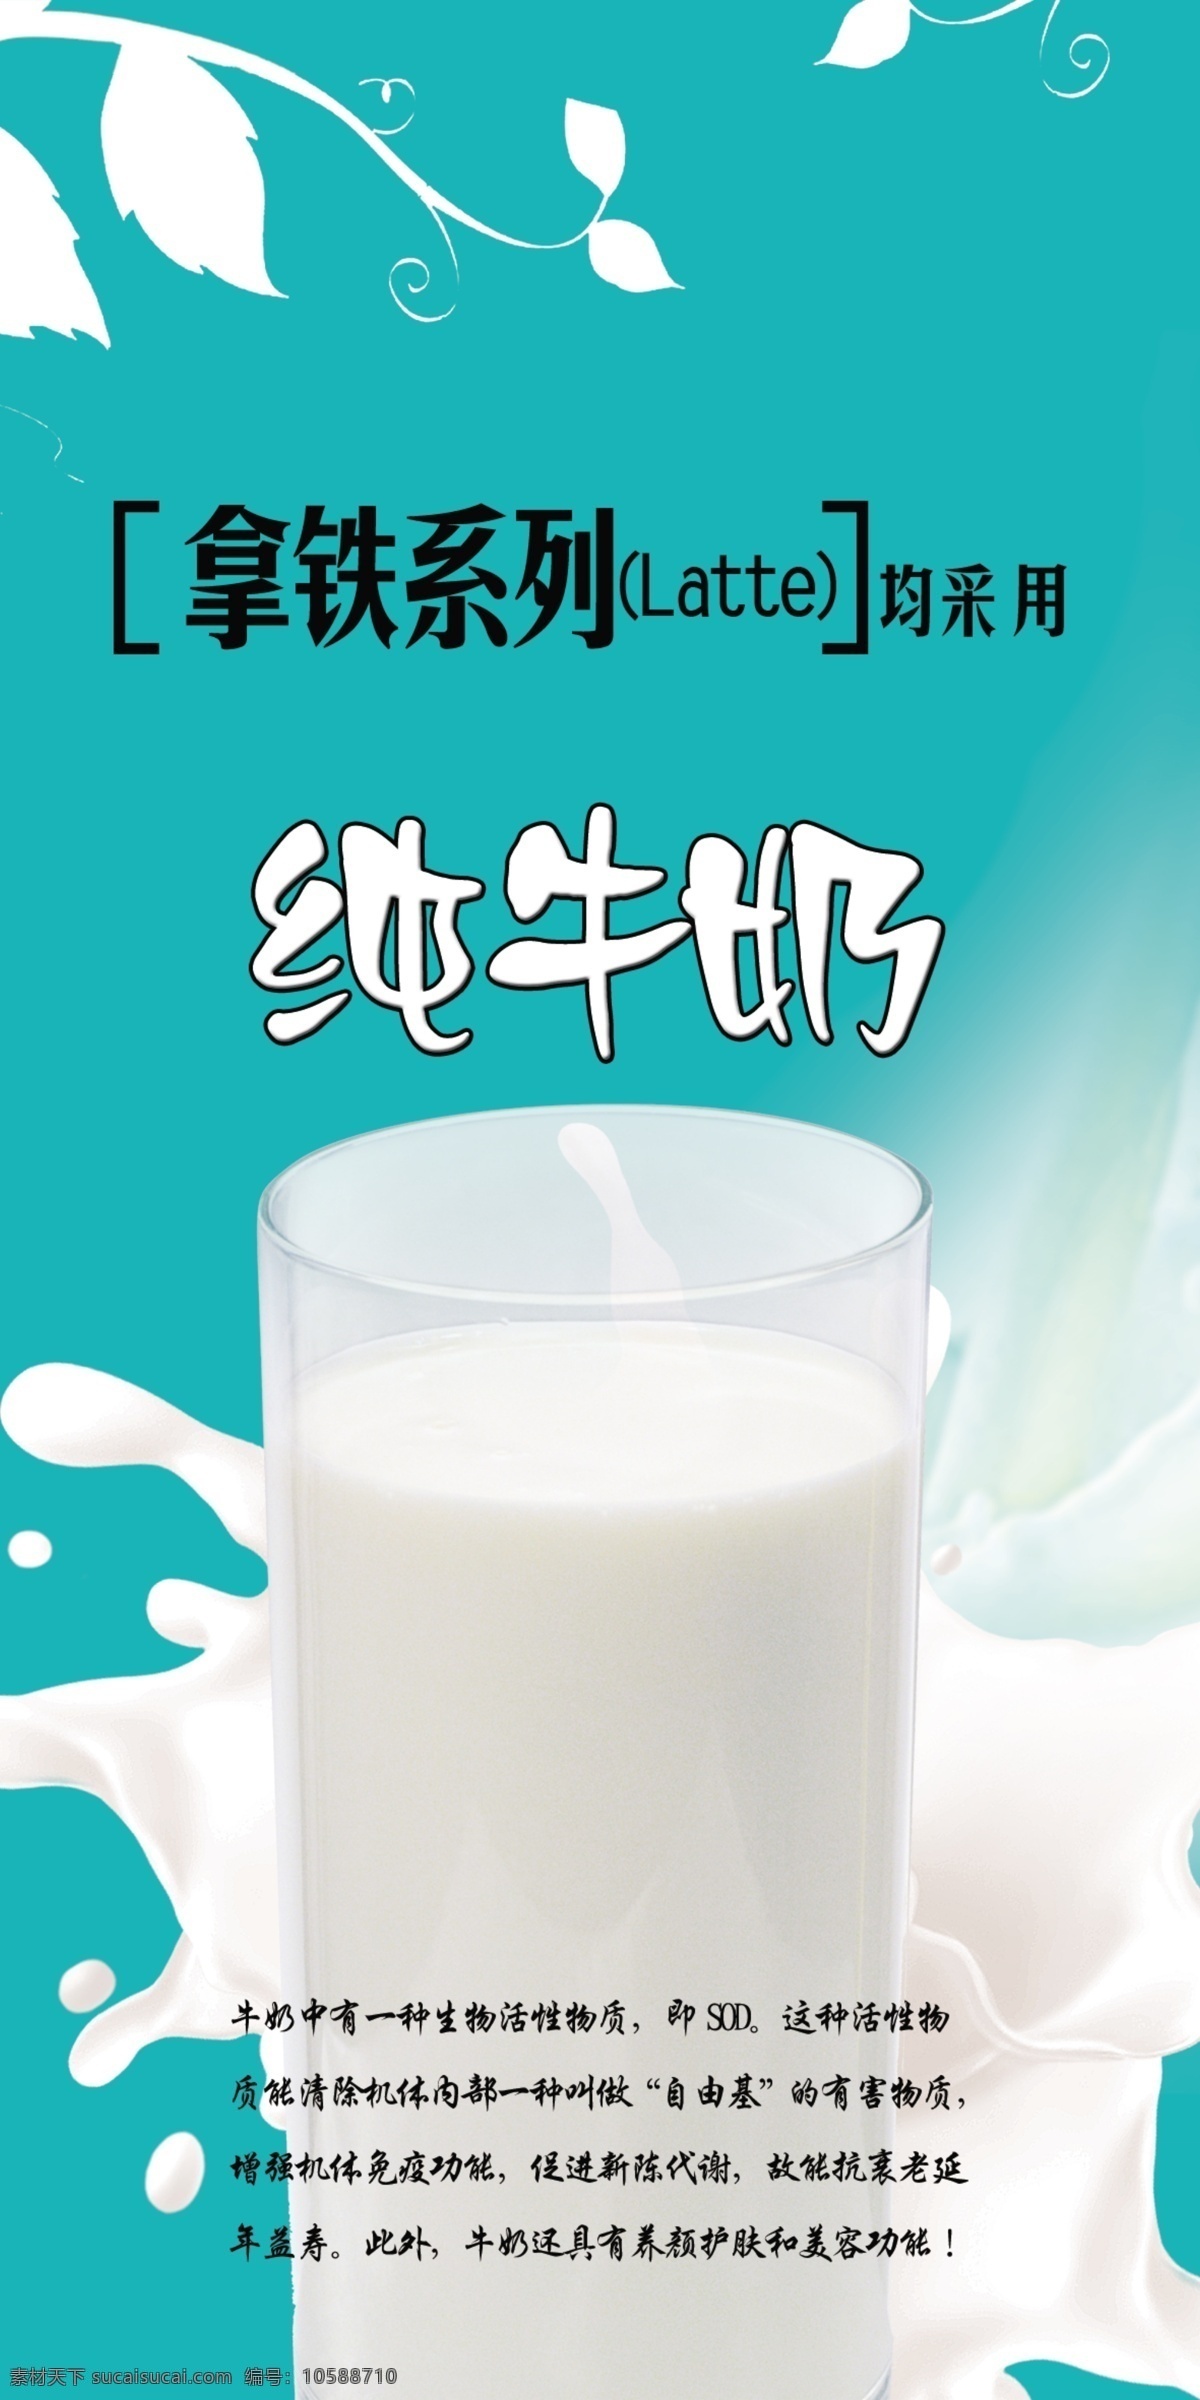 纯牛奶 杯子 奶花 拿铁 广告设计模板 源文件